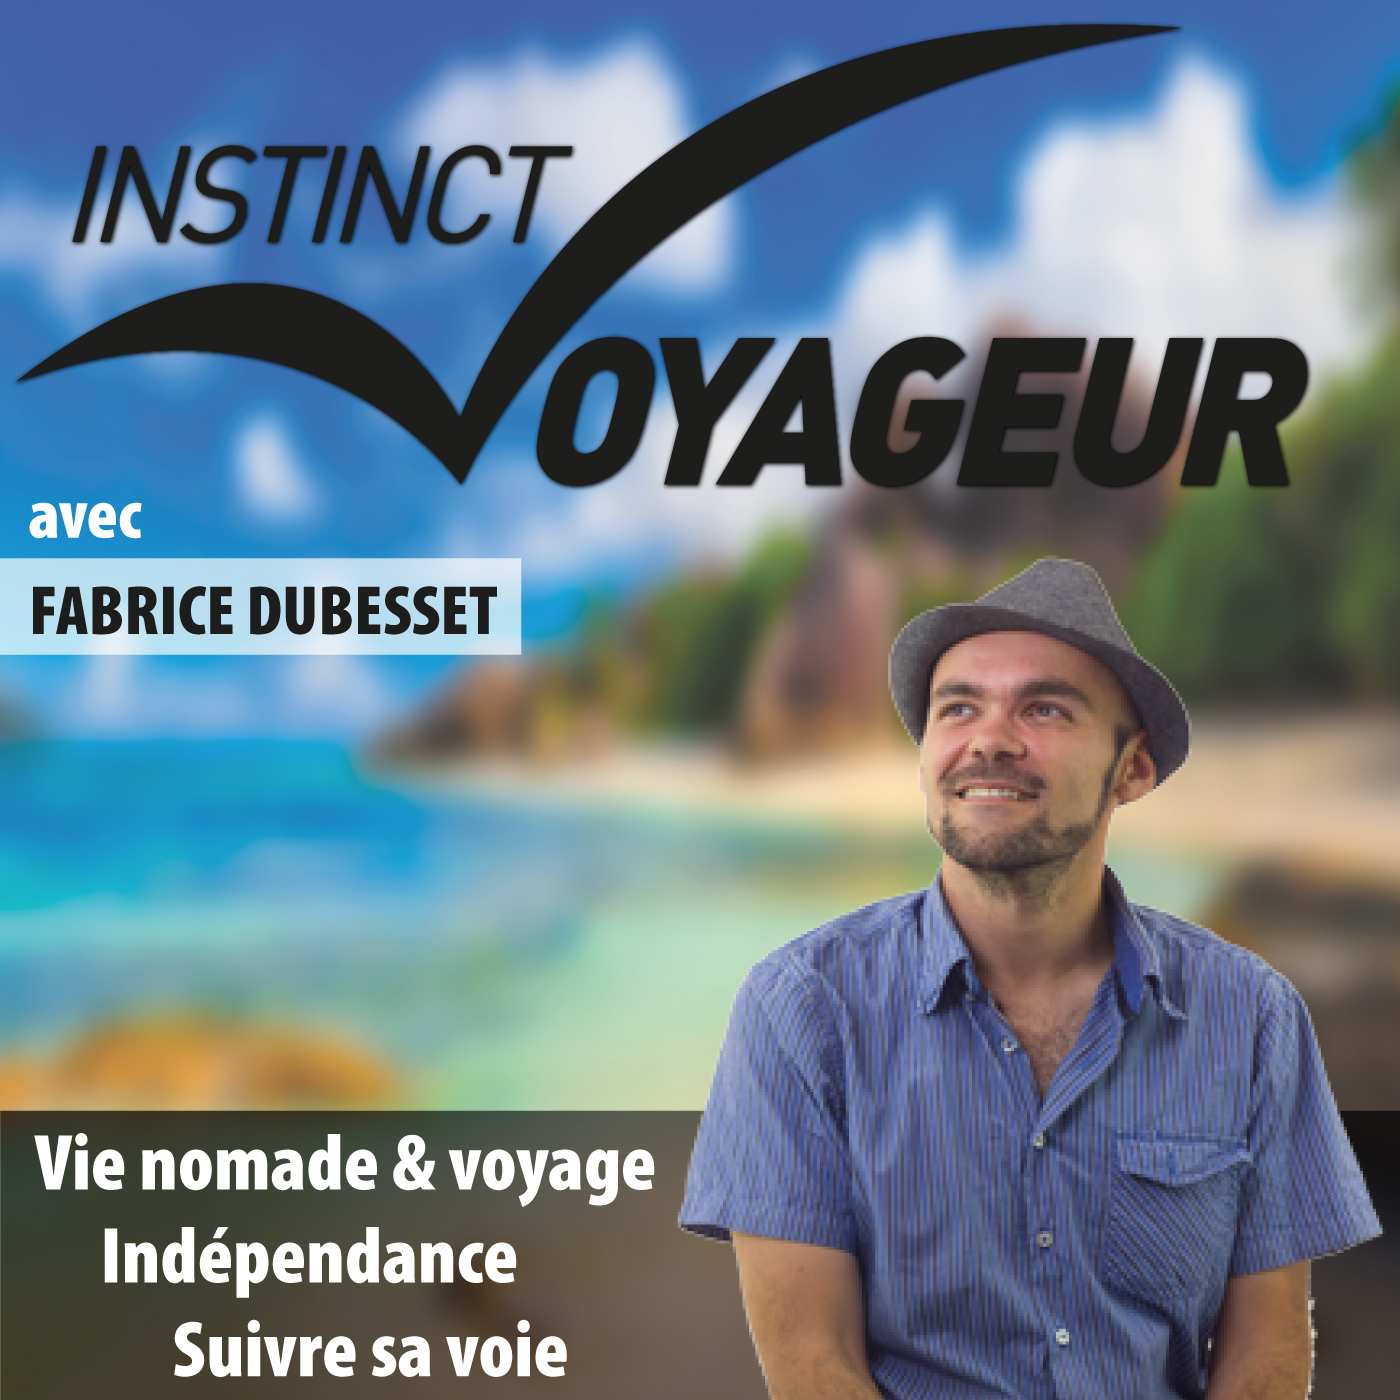 IVCAST 22 : Voyageur aveugle, l'histoire de Jean-Pierre Brouillaud